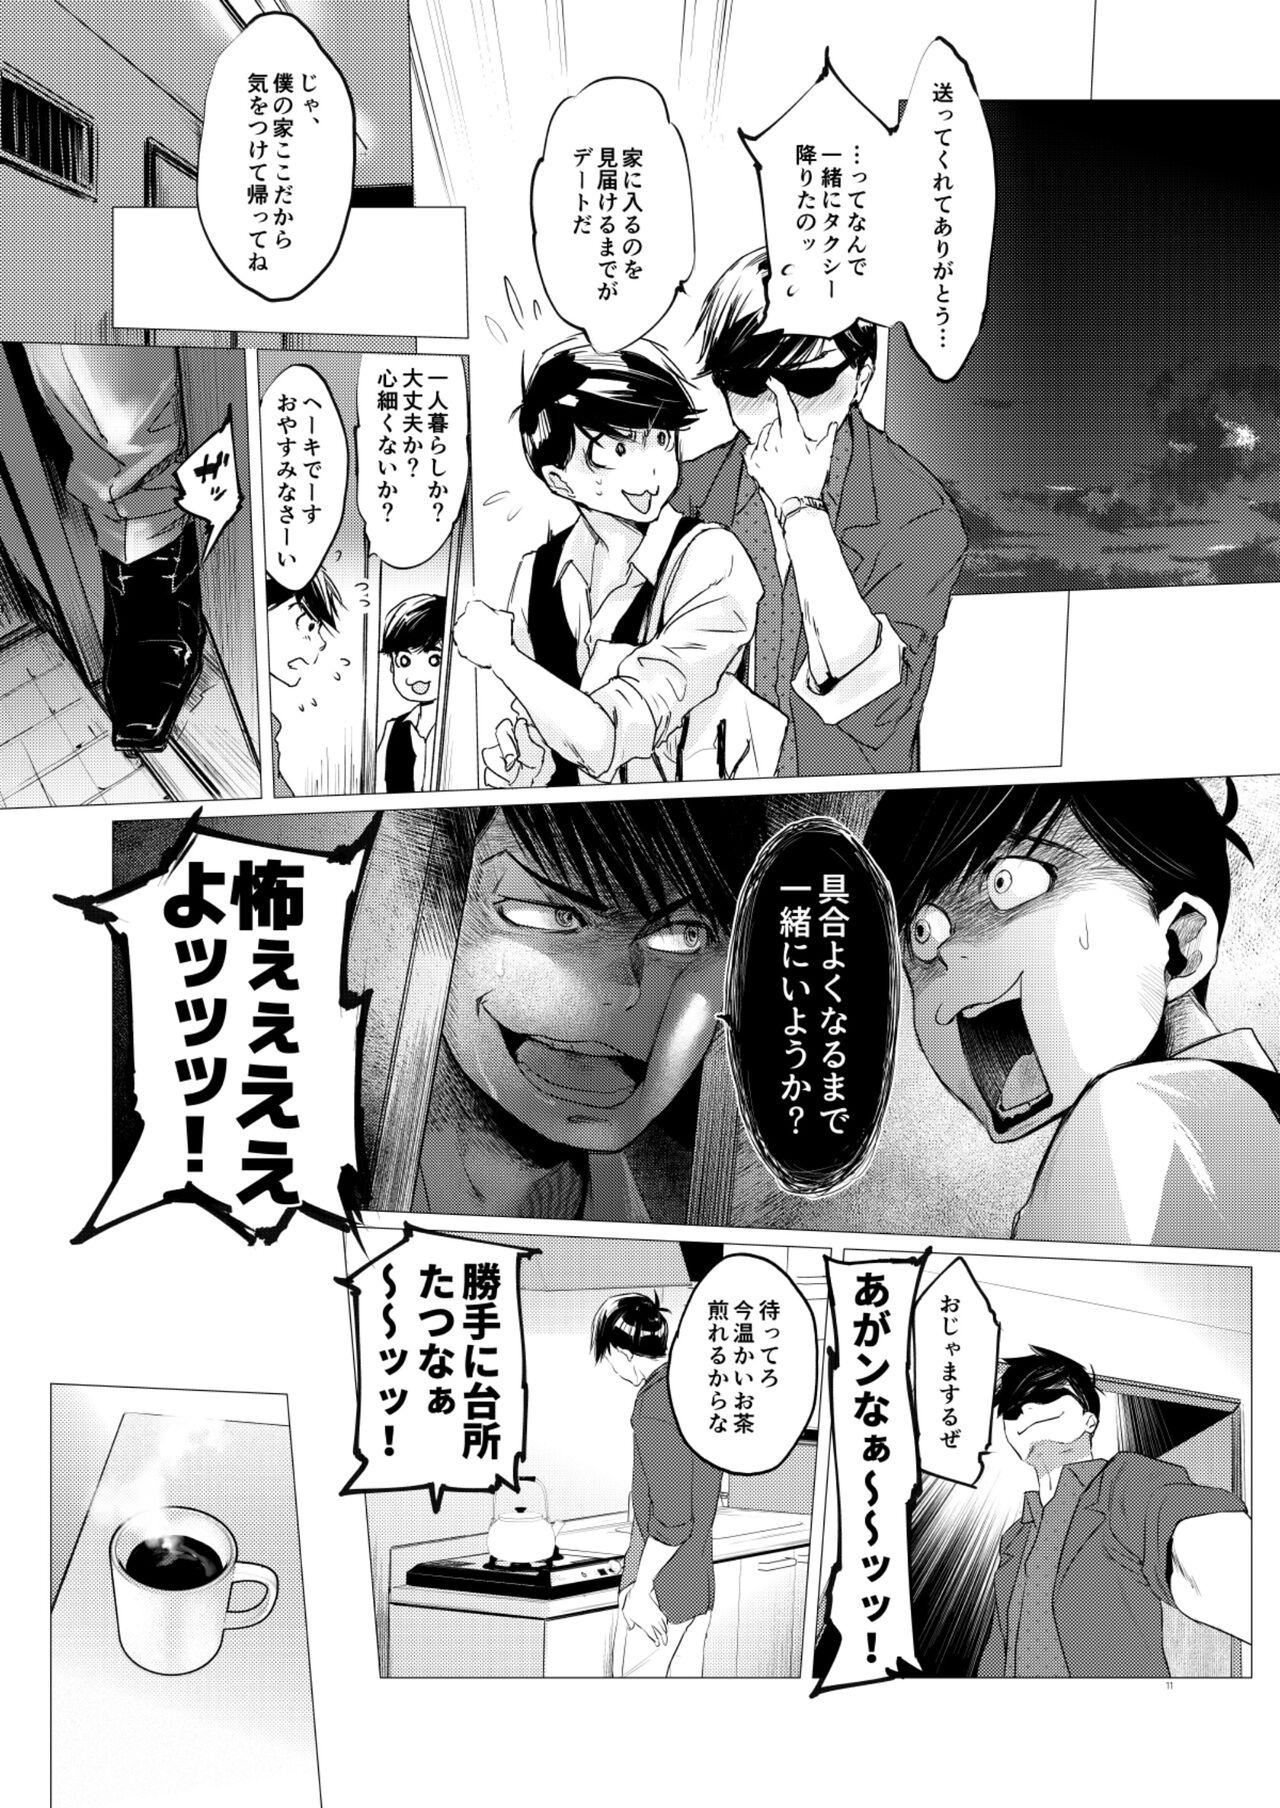 Cei Mattei Arigataya Vol. 1 Kahitsuban - Osomatsu san Massage Creep - Page 10